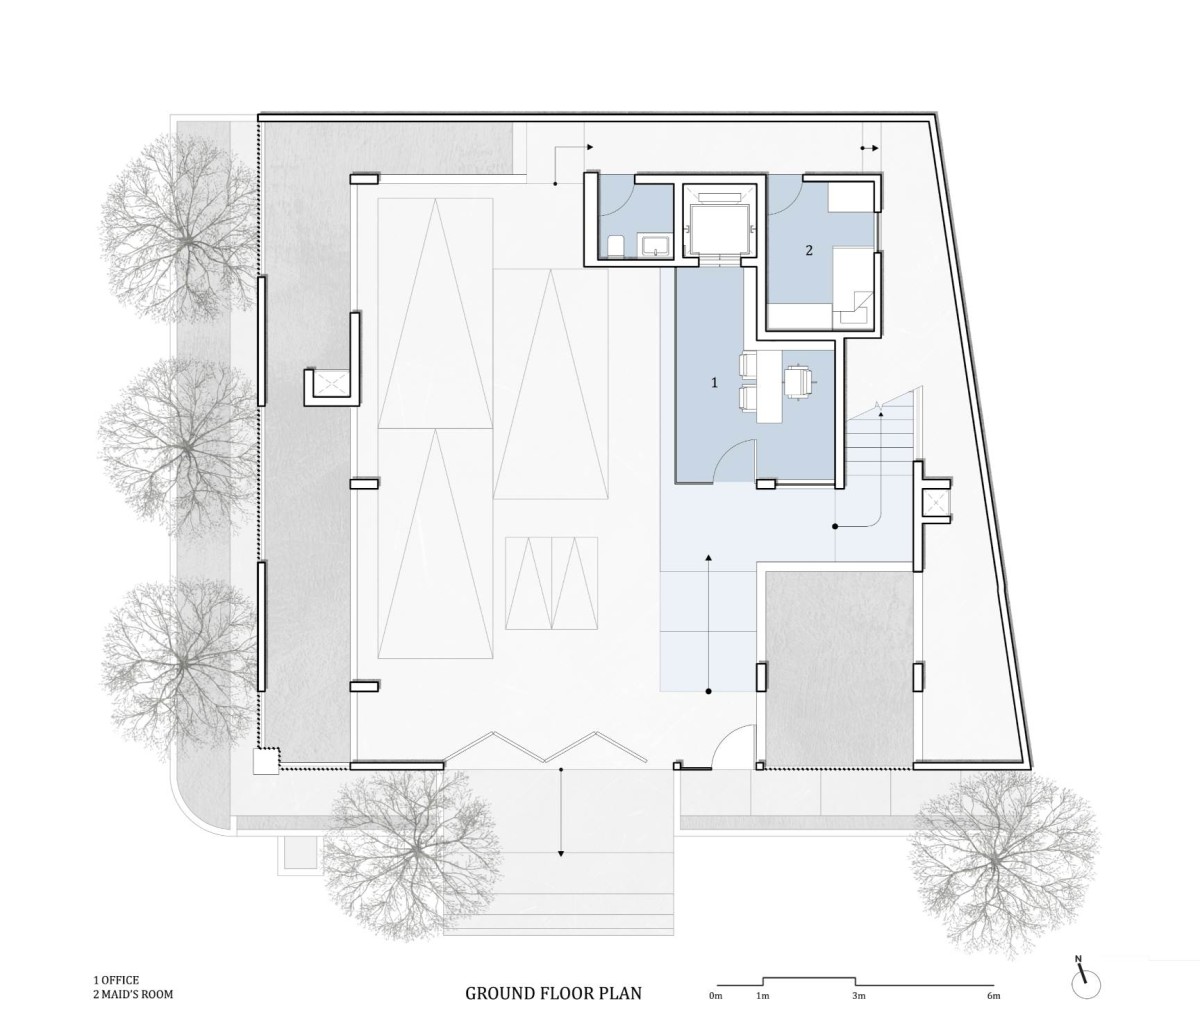 Ground floor plan of RL Residence by SDeG